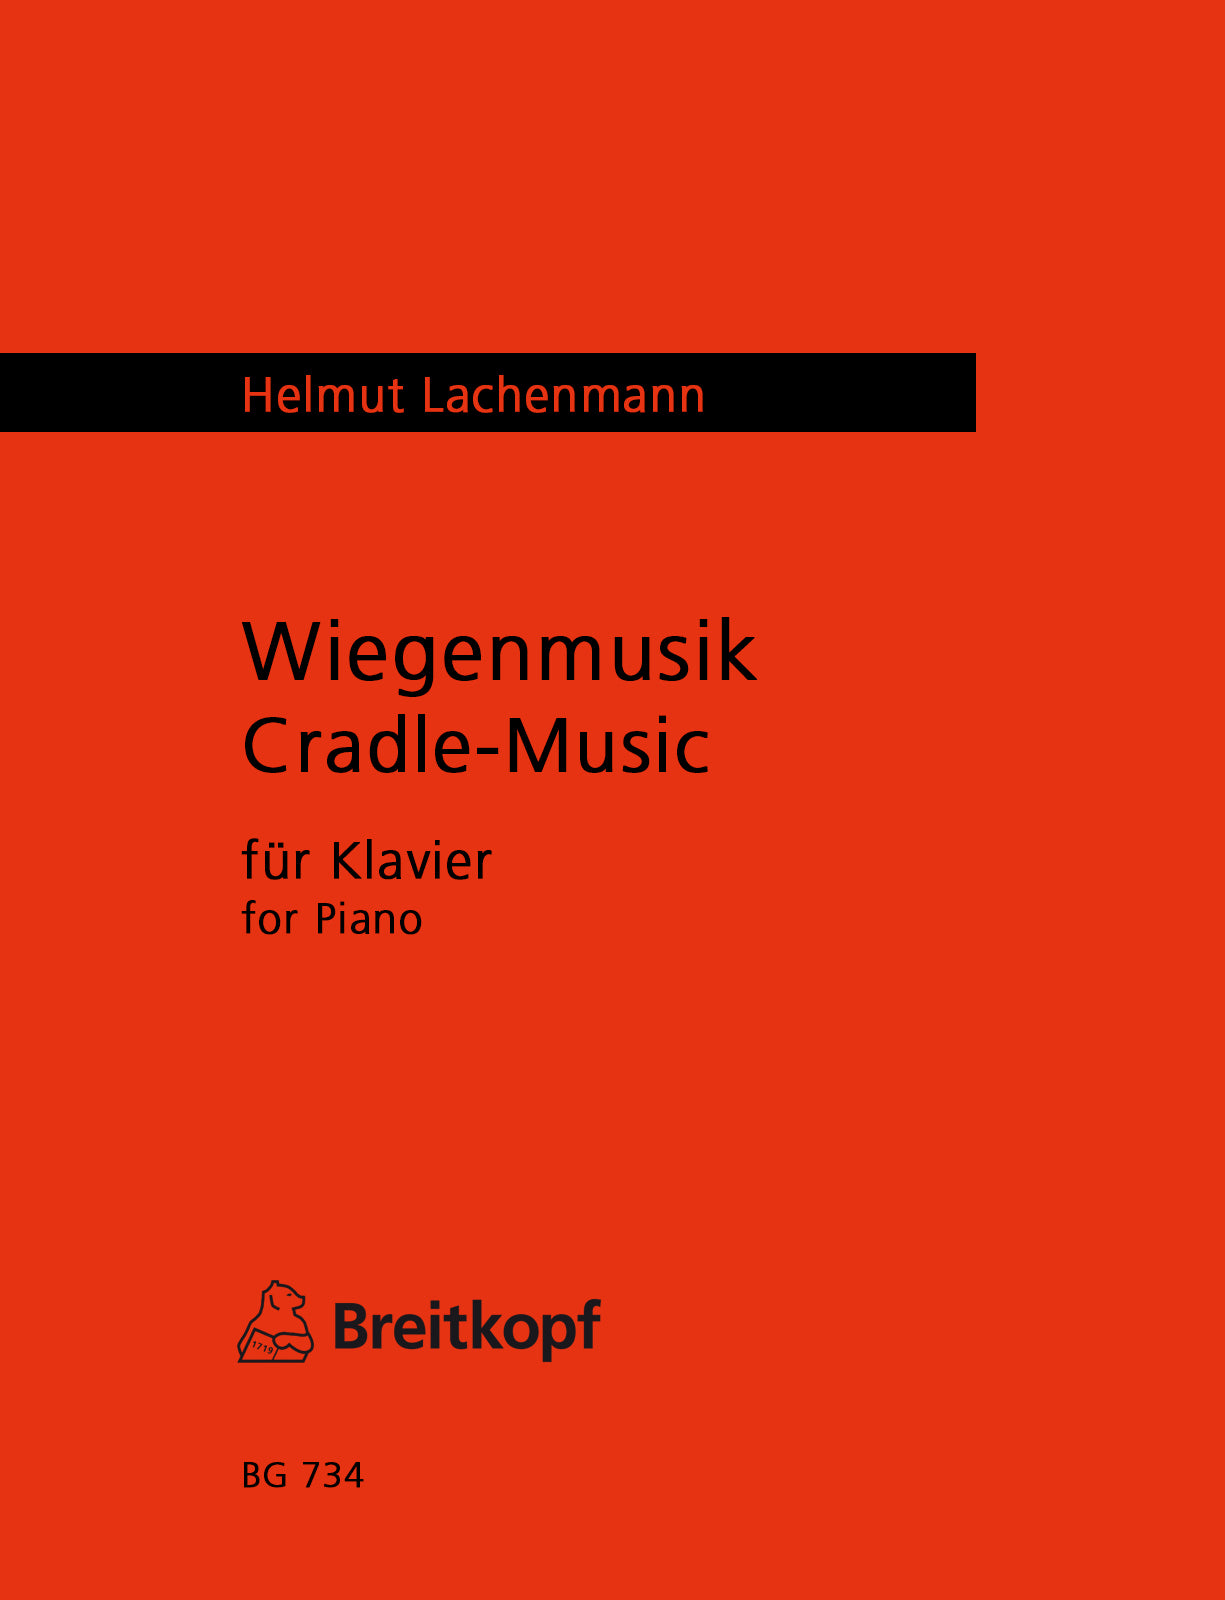 Lachenmann: Cradle-Music